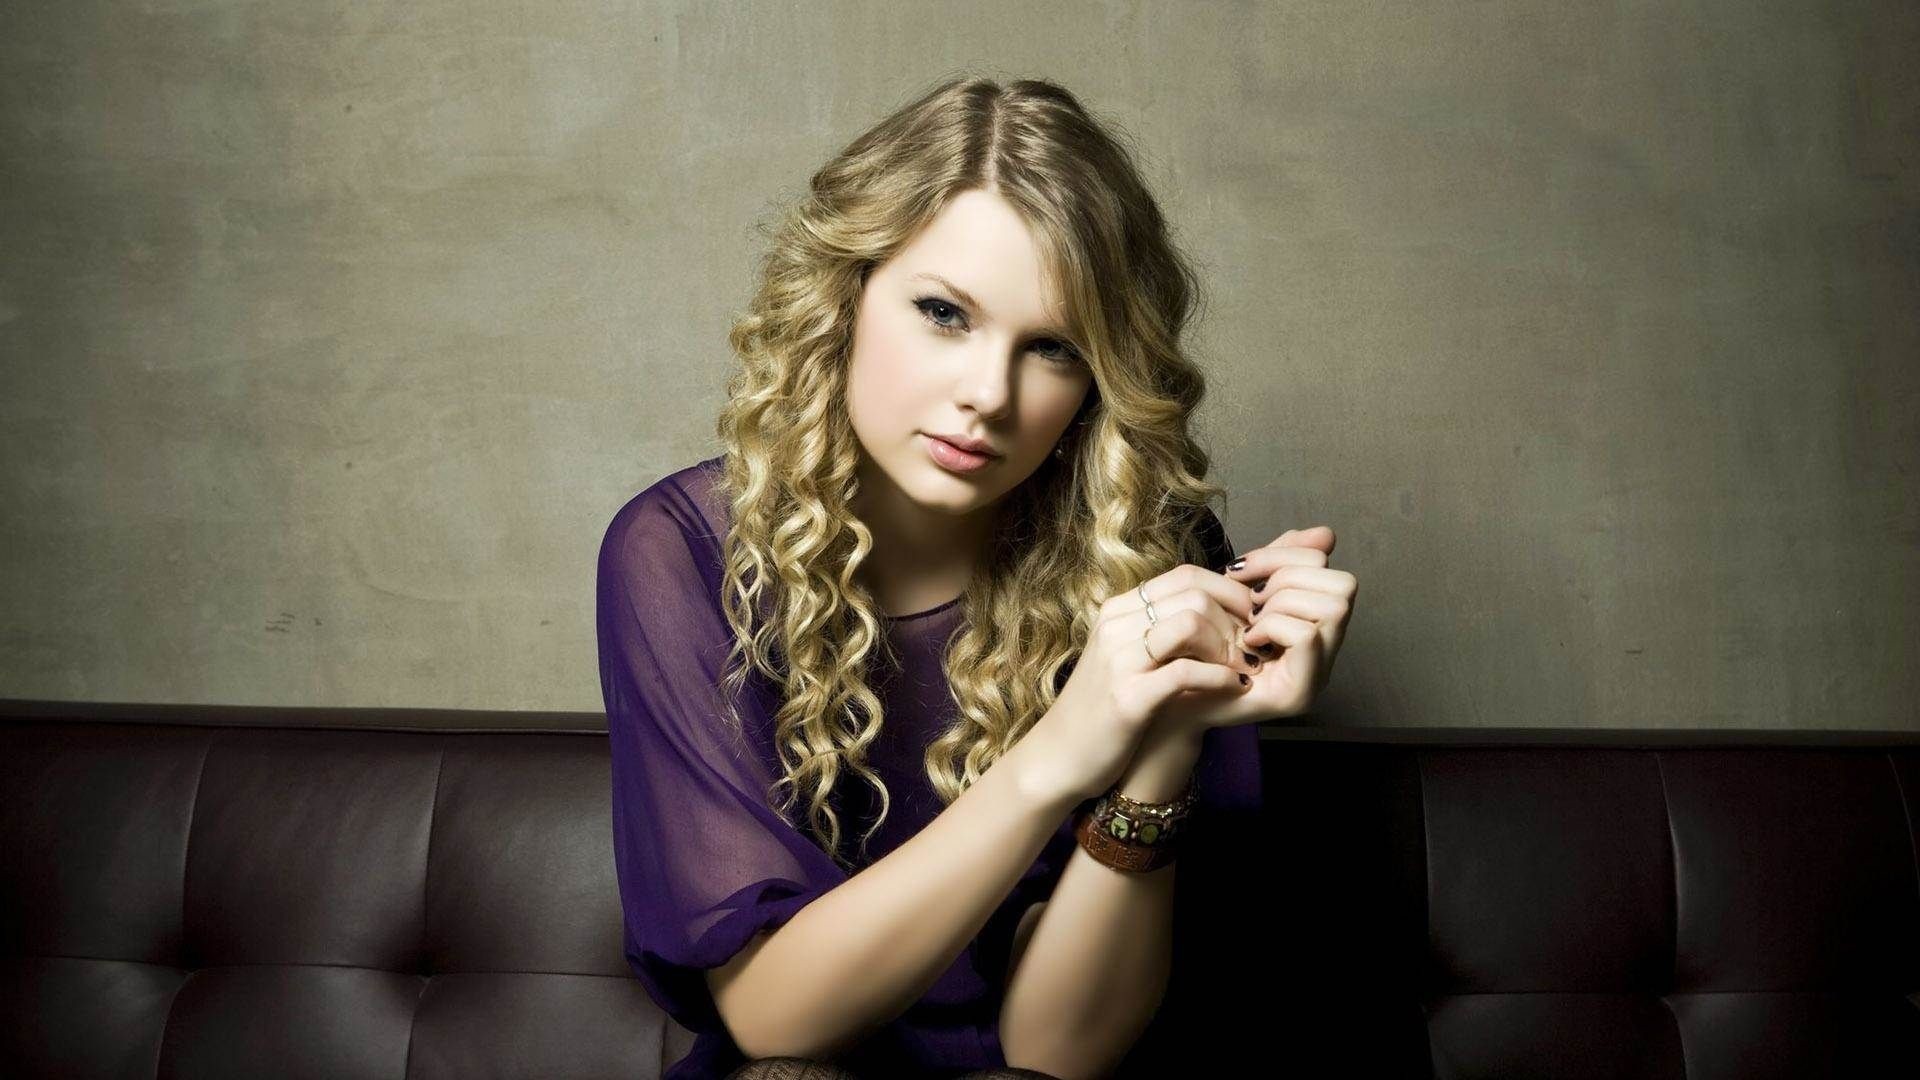 Taylor Swift Wallpaper theme